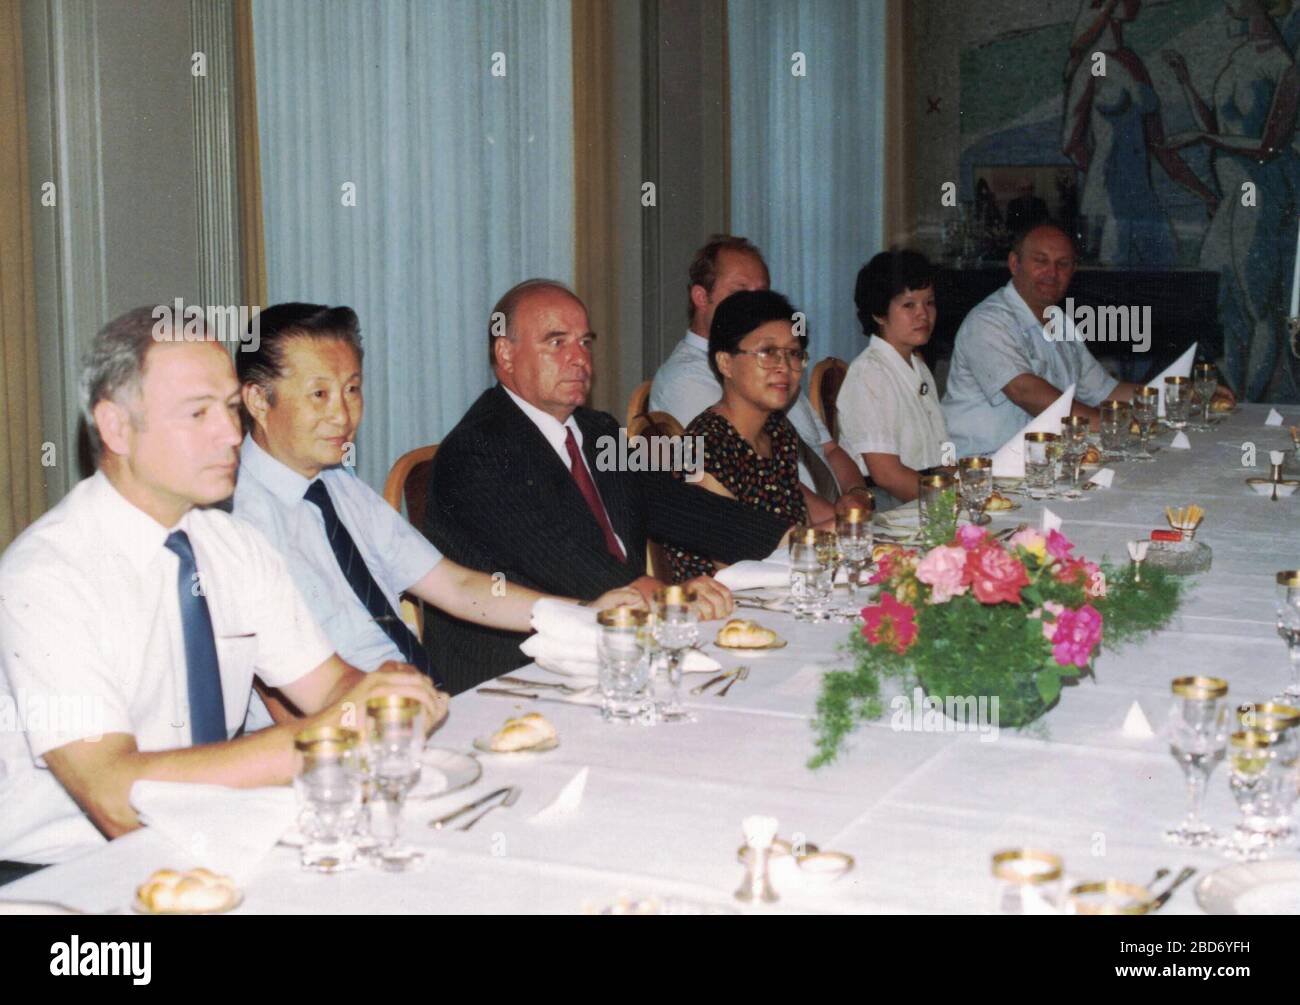 CHINA - 1989: Retro-Foto zeigt eine Gruppe von kaukasiern - europäische Geschäftsleute und chinesische Geschäftsleute haben ein Arbeitsessen. Festliches Geschäftsessen. Stockfoto